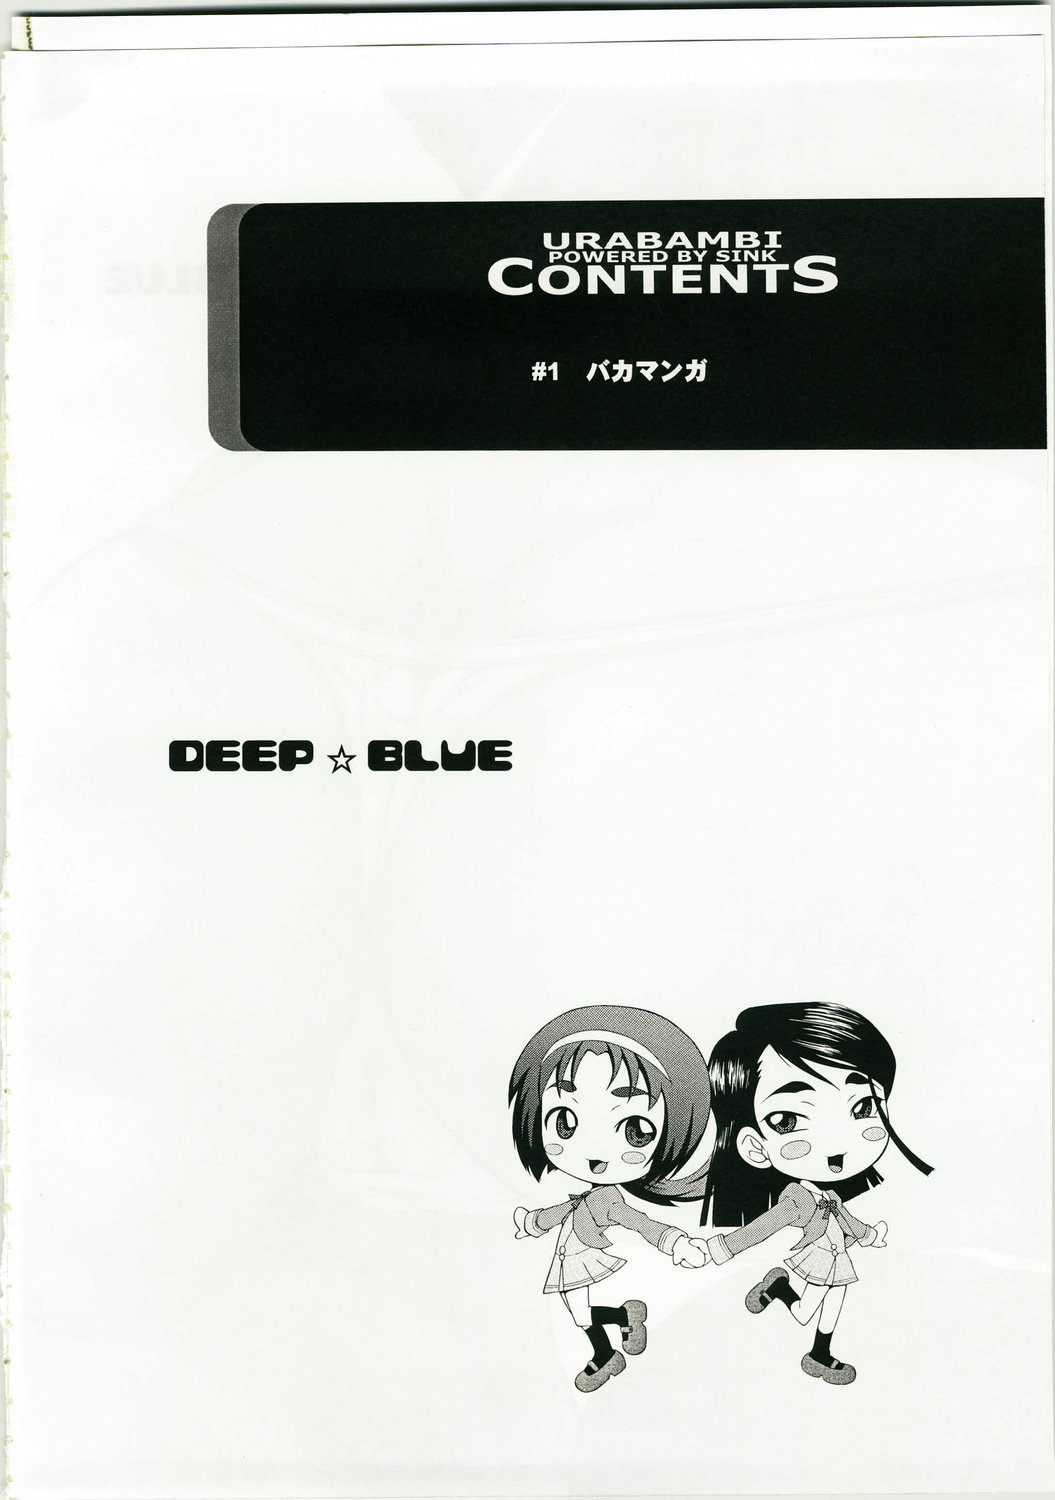 (Puniket 17) [Urakata Honpo (Sink)] Urabambi Vol. 36 - Deep Blue (Yes! Precure 5) (ぷにケット 17) [裏方本舗 (SINK)] ウラバンビ Vol.36 -DEEP BLUE- (Yes! プリキュア5)